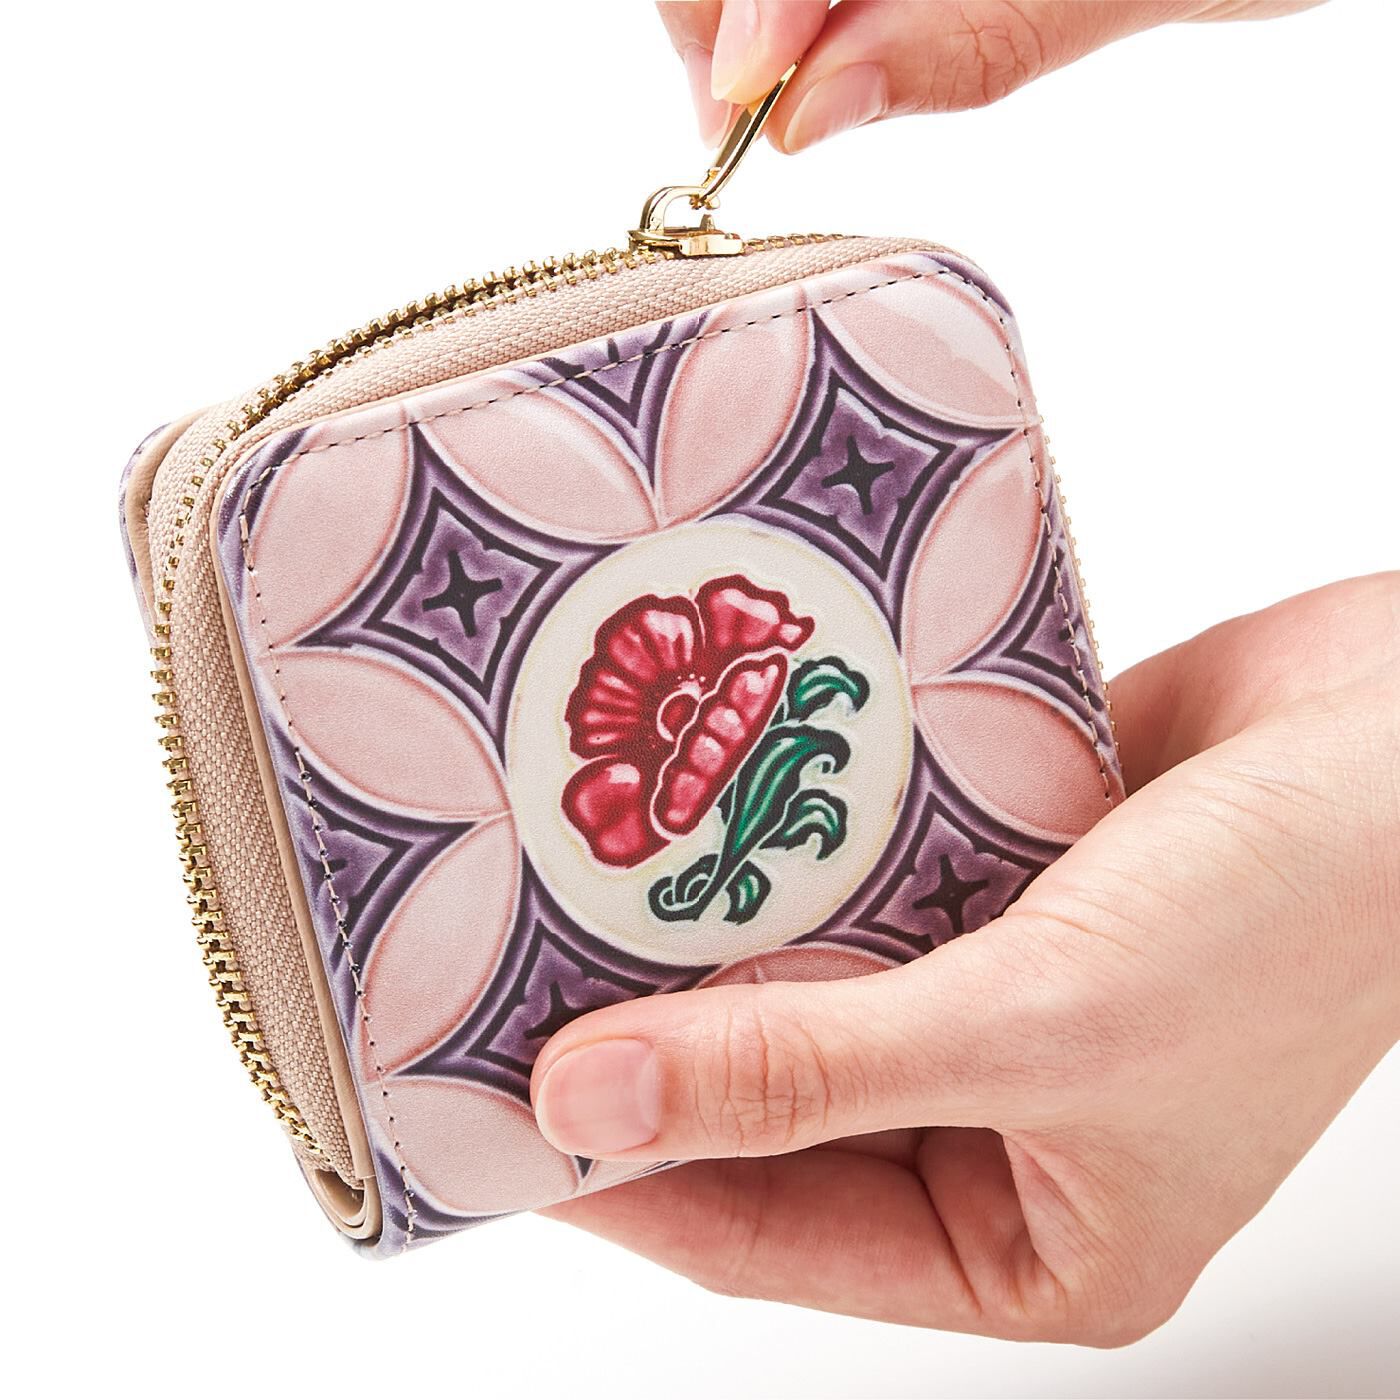 フェリシモの雑貨Kraso|『世界のタイル博物館』和製マジョリカタイル模様の二つ折り財布|二つ折りで手のひらにすっぽり収まるコンパクト設計。